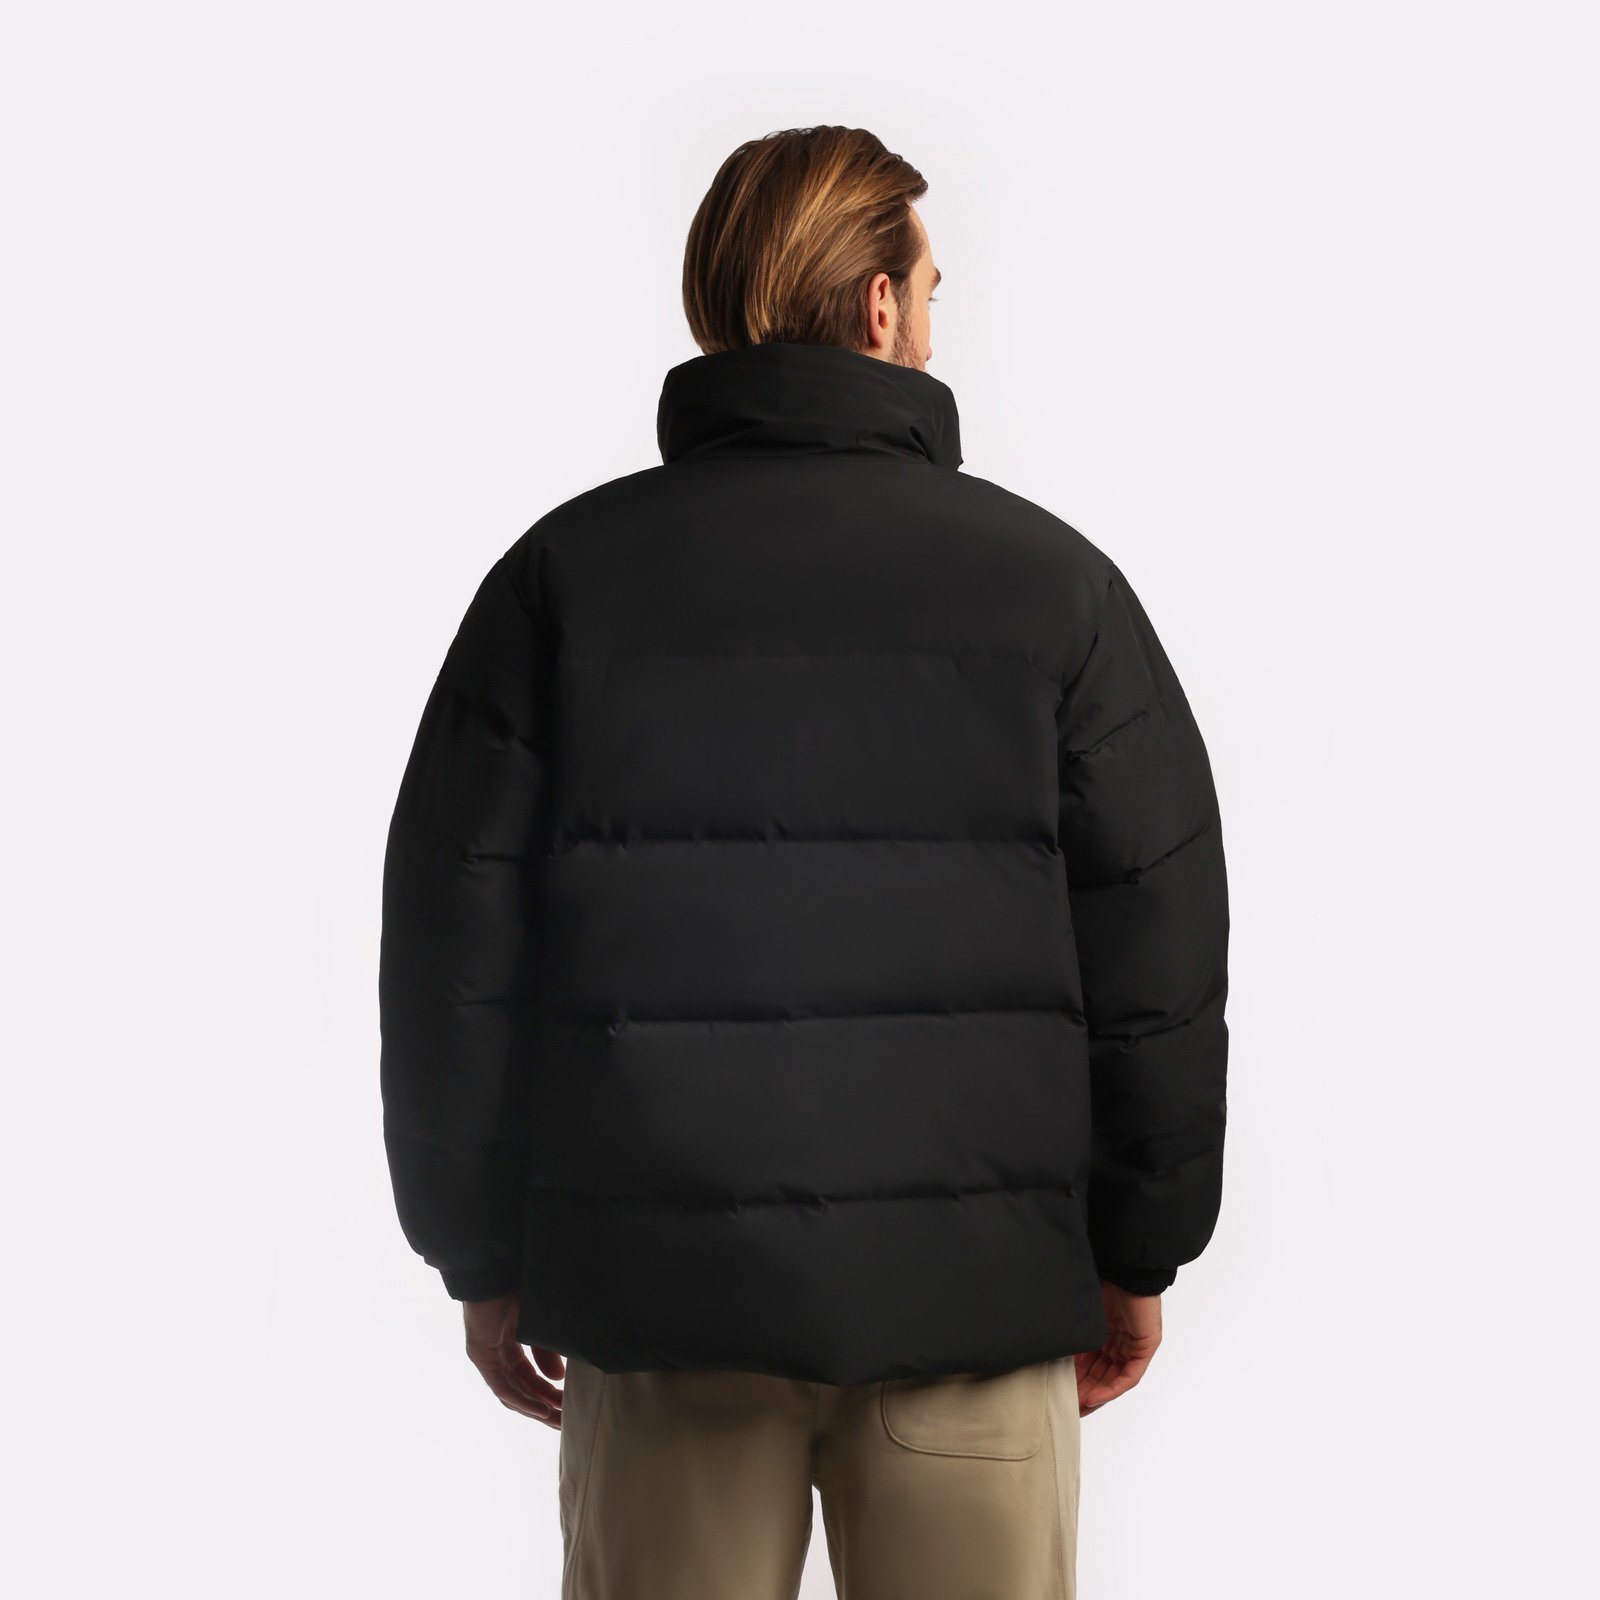 мужская куртка Carhartt WIP Danville Jacket  (I029450-black/wht)  - цена, описание, фото 4